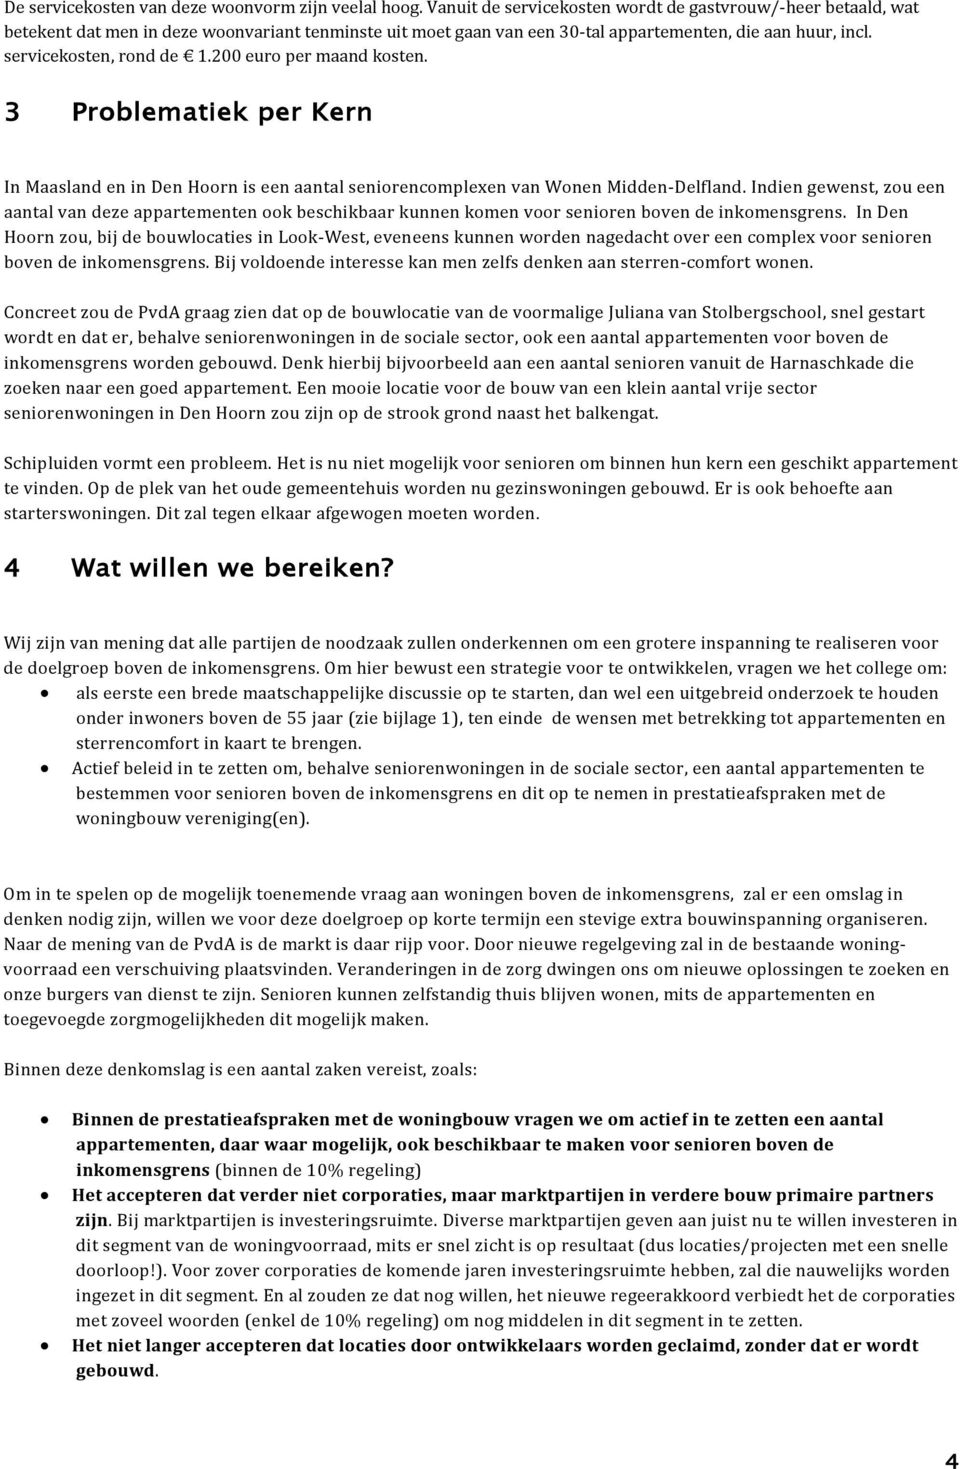 200 euro per maand kosten. 3 Problematiek per Kern In Maasland en in Den Hoorn is een aantal seniorencomplexen van Wonen Midden-Delfland.